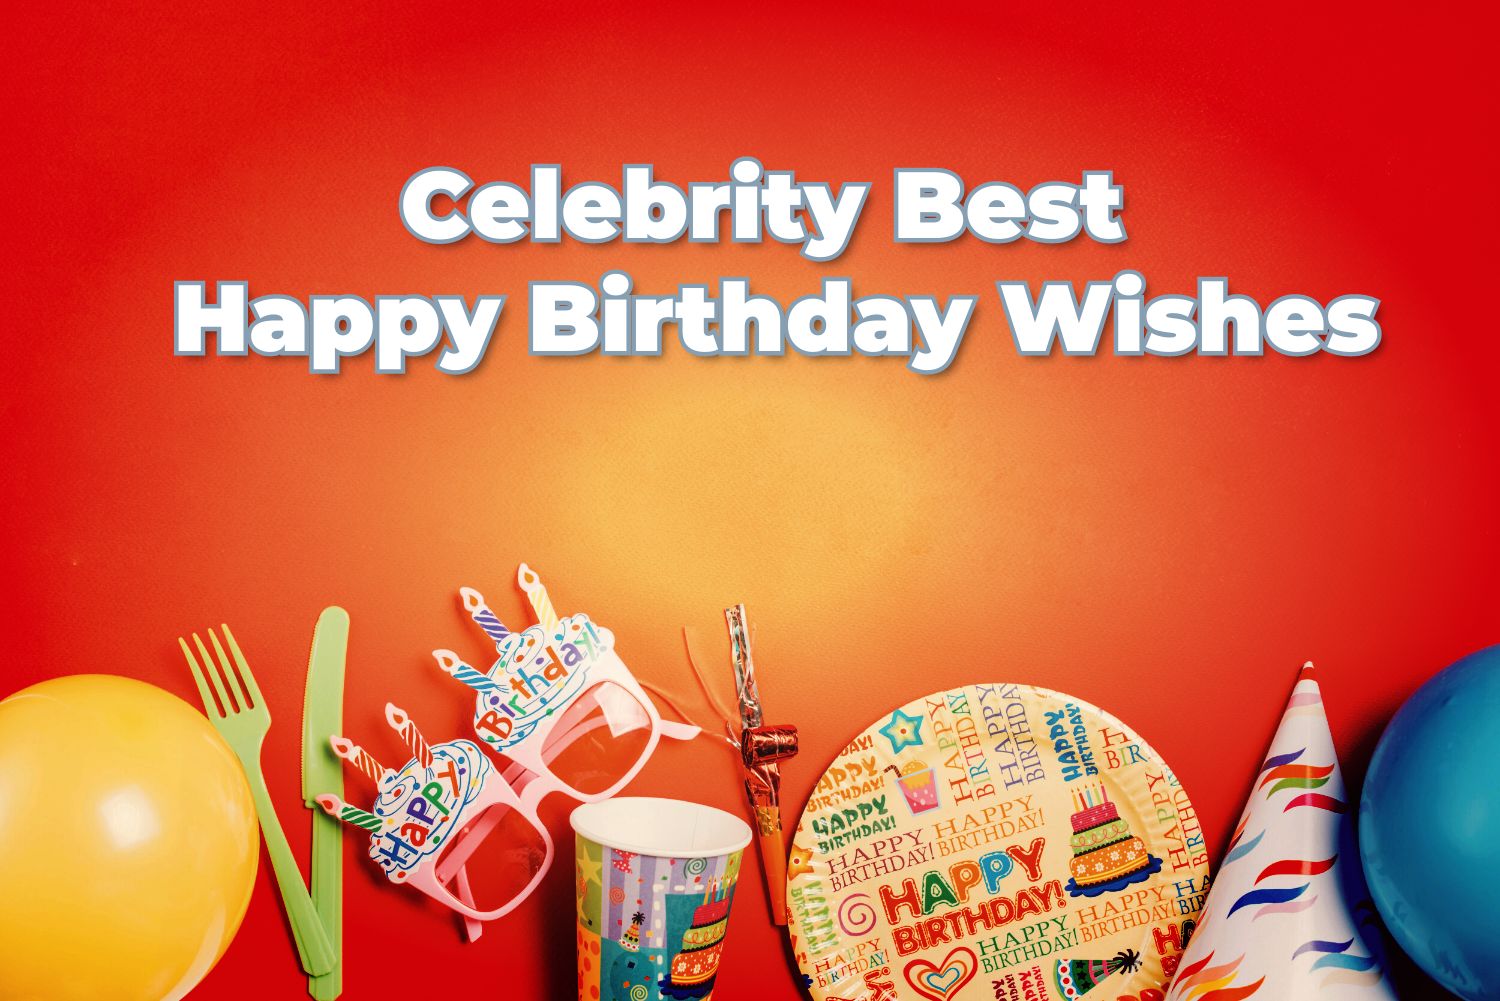 Celebrity Best Birthday Wishes